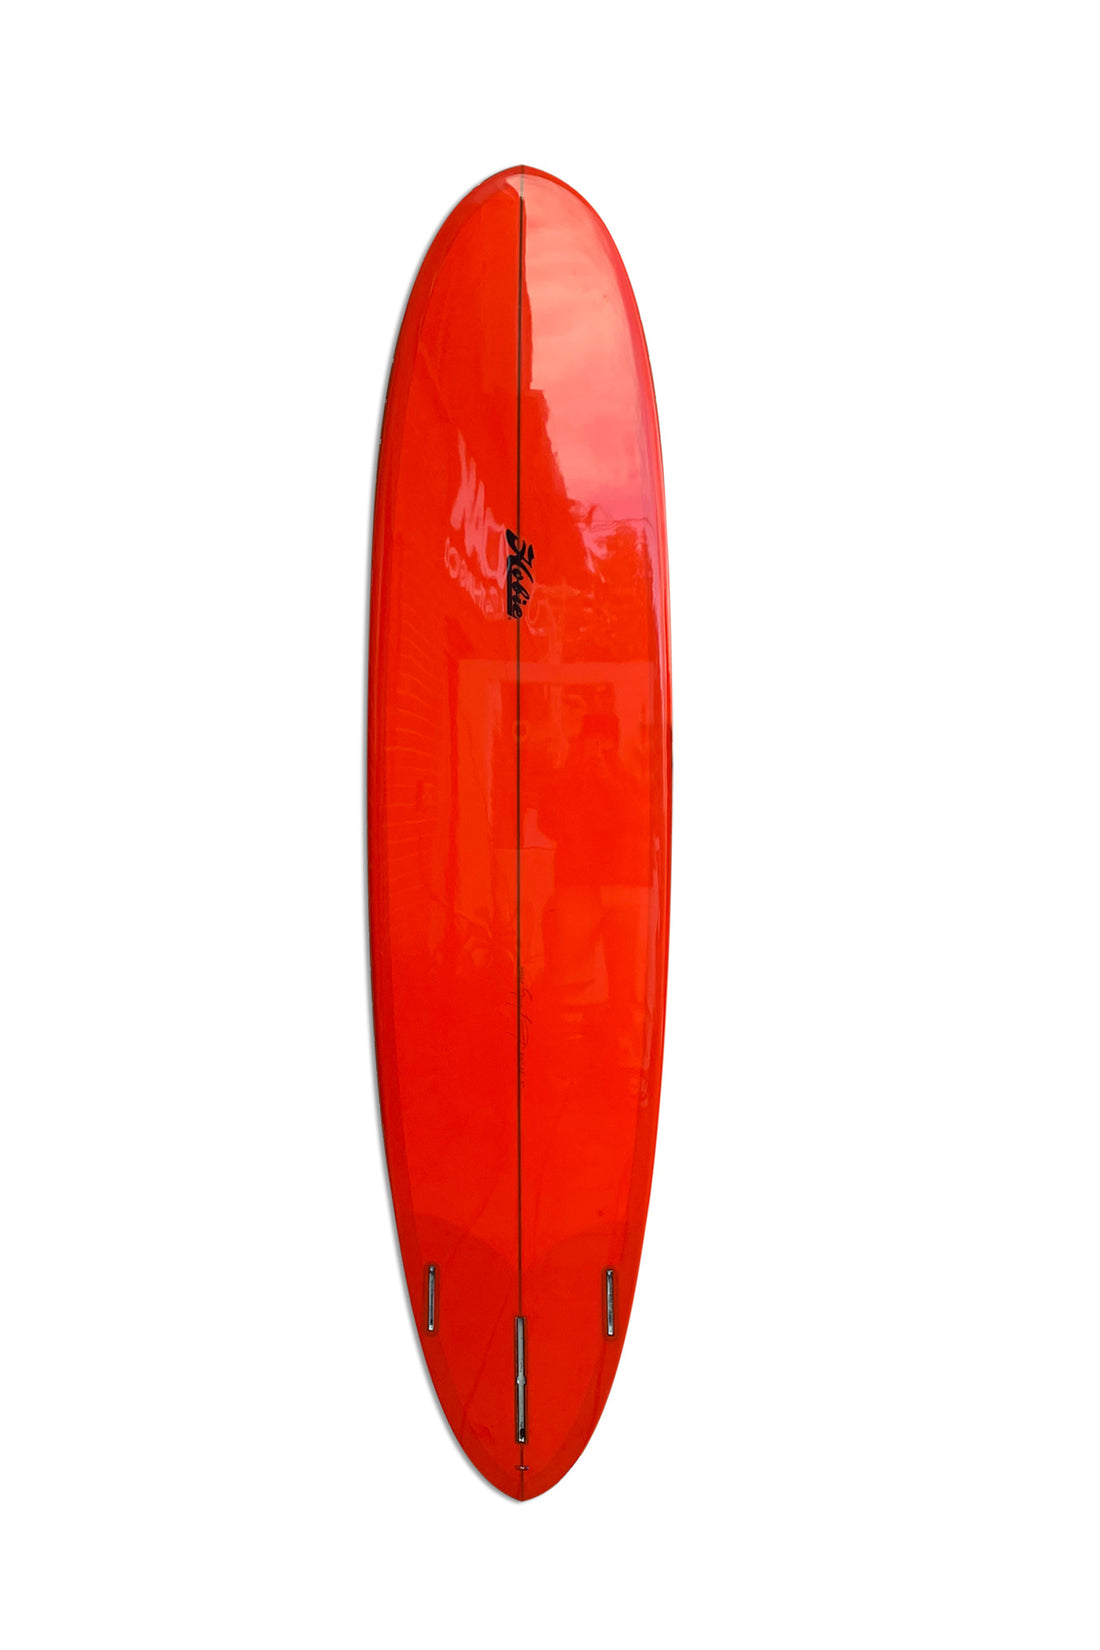 8.0 HOBIE RETRO EGG - RED SURFBOARD HOBIE   